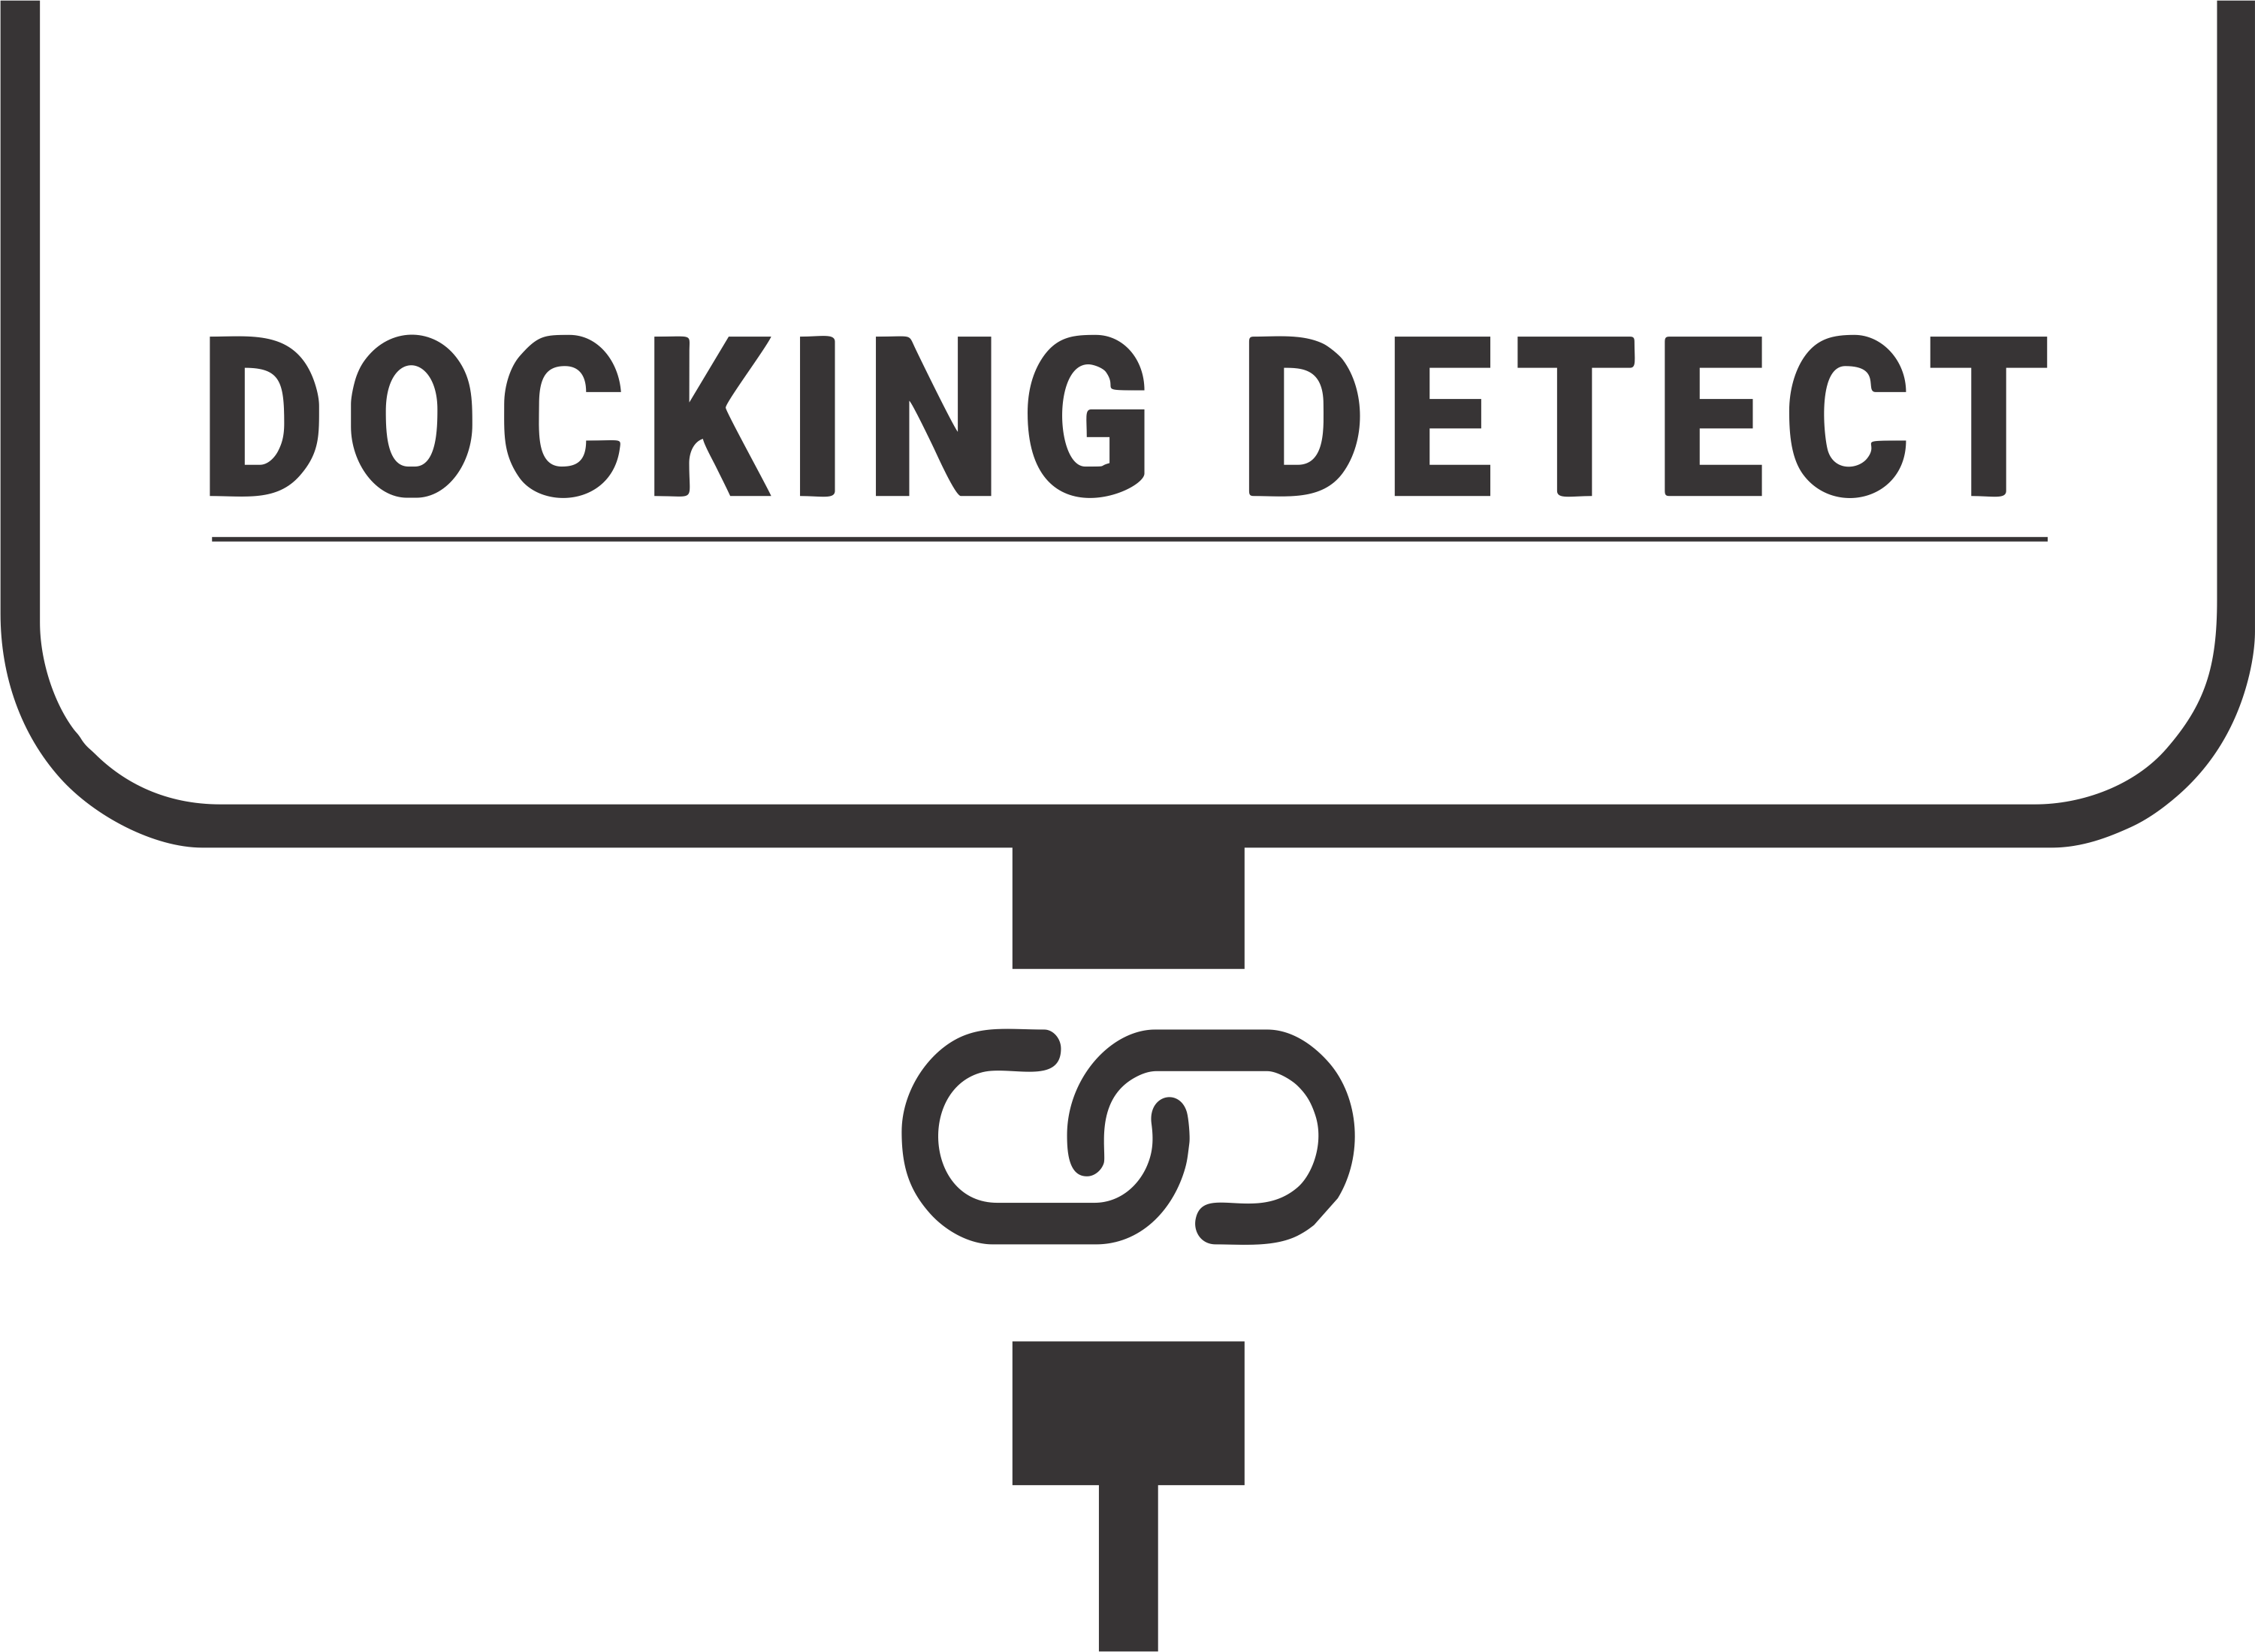 Docking Detect